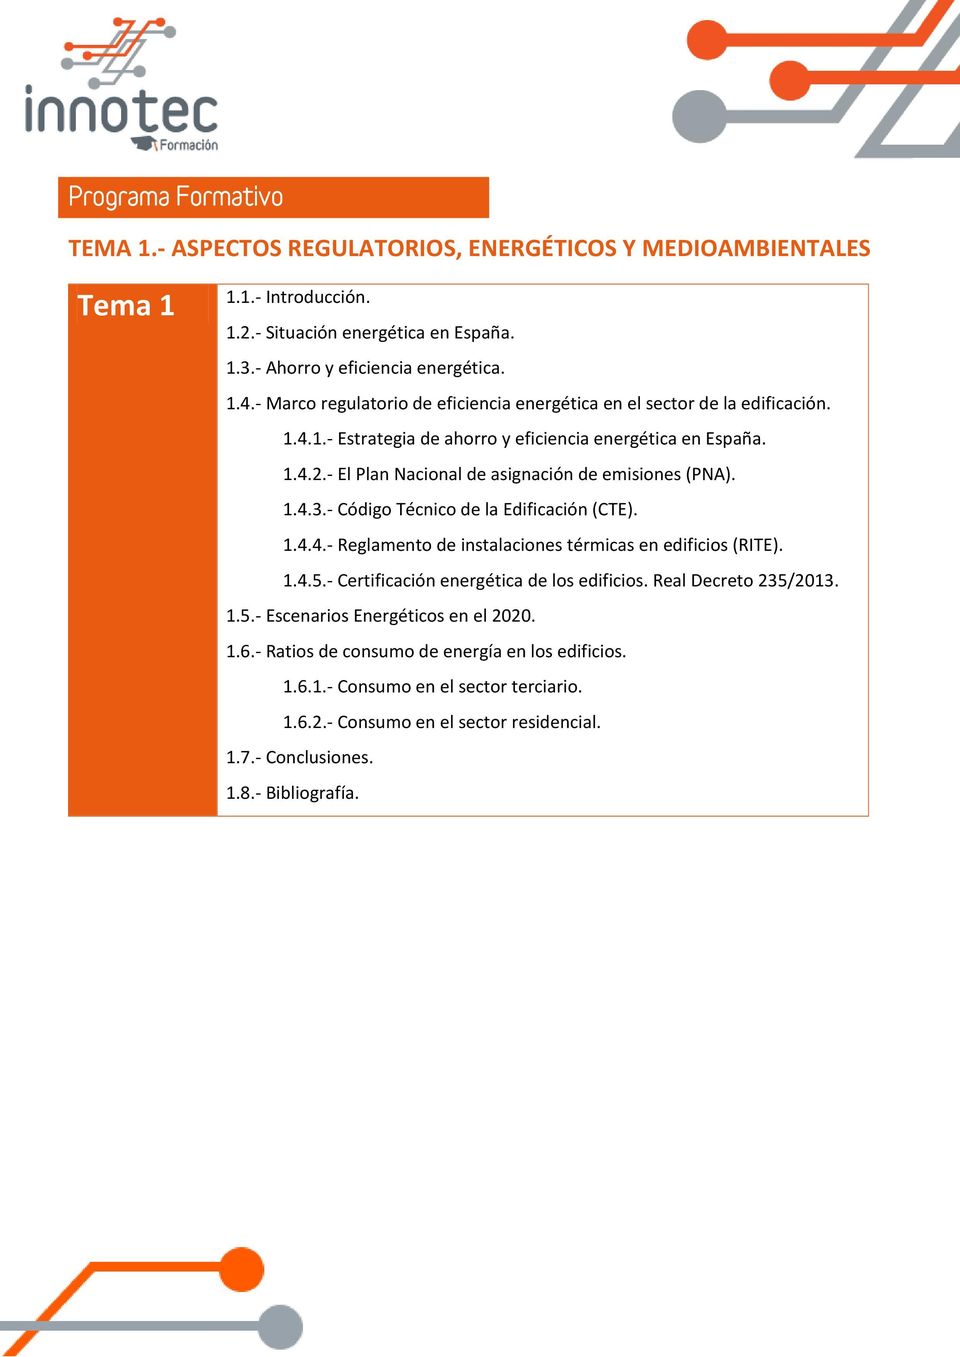 - El Plan Nacional de asignación de emisiones (PNA). 1.4.3.- Código Técnico de la Edificación (CTE). 1.4.4.- Reglamento de instalaciones térmicas en edificios (RITE). 1.4.5.